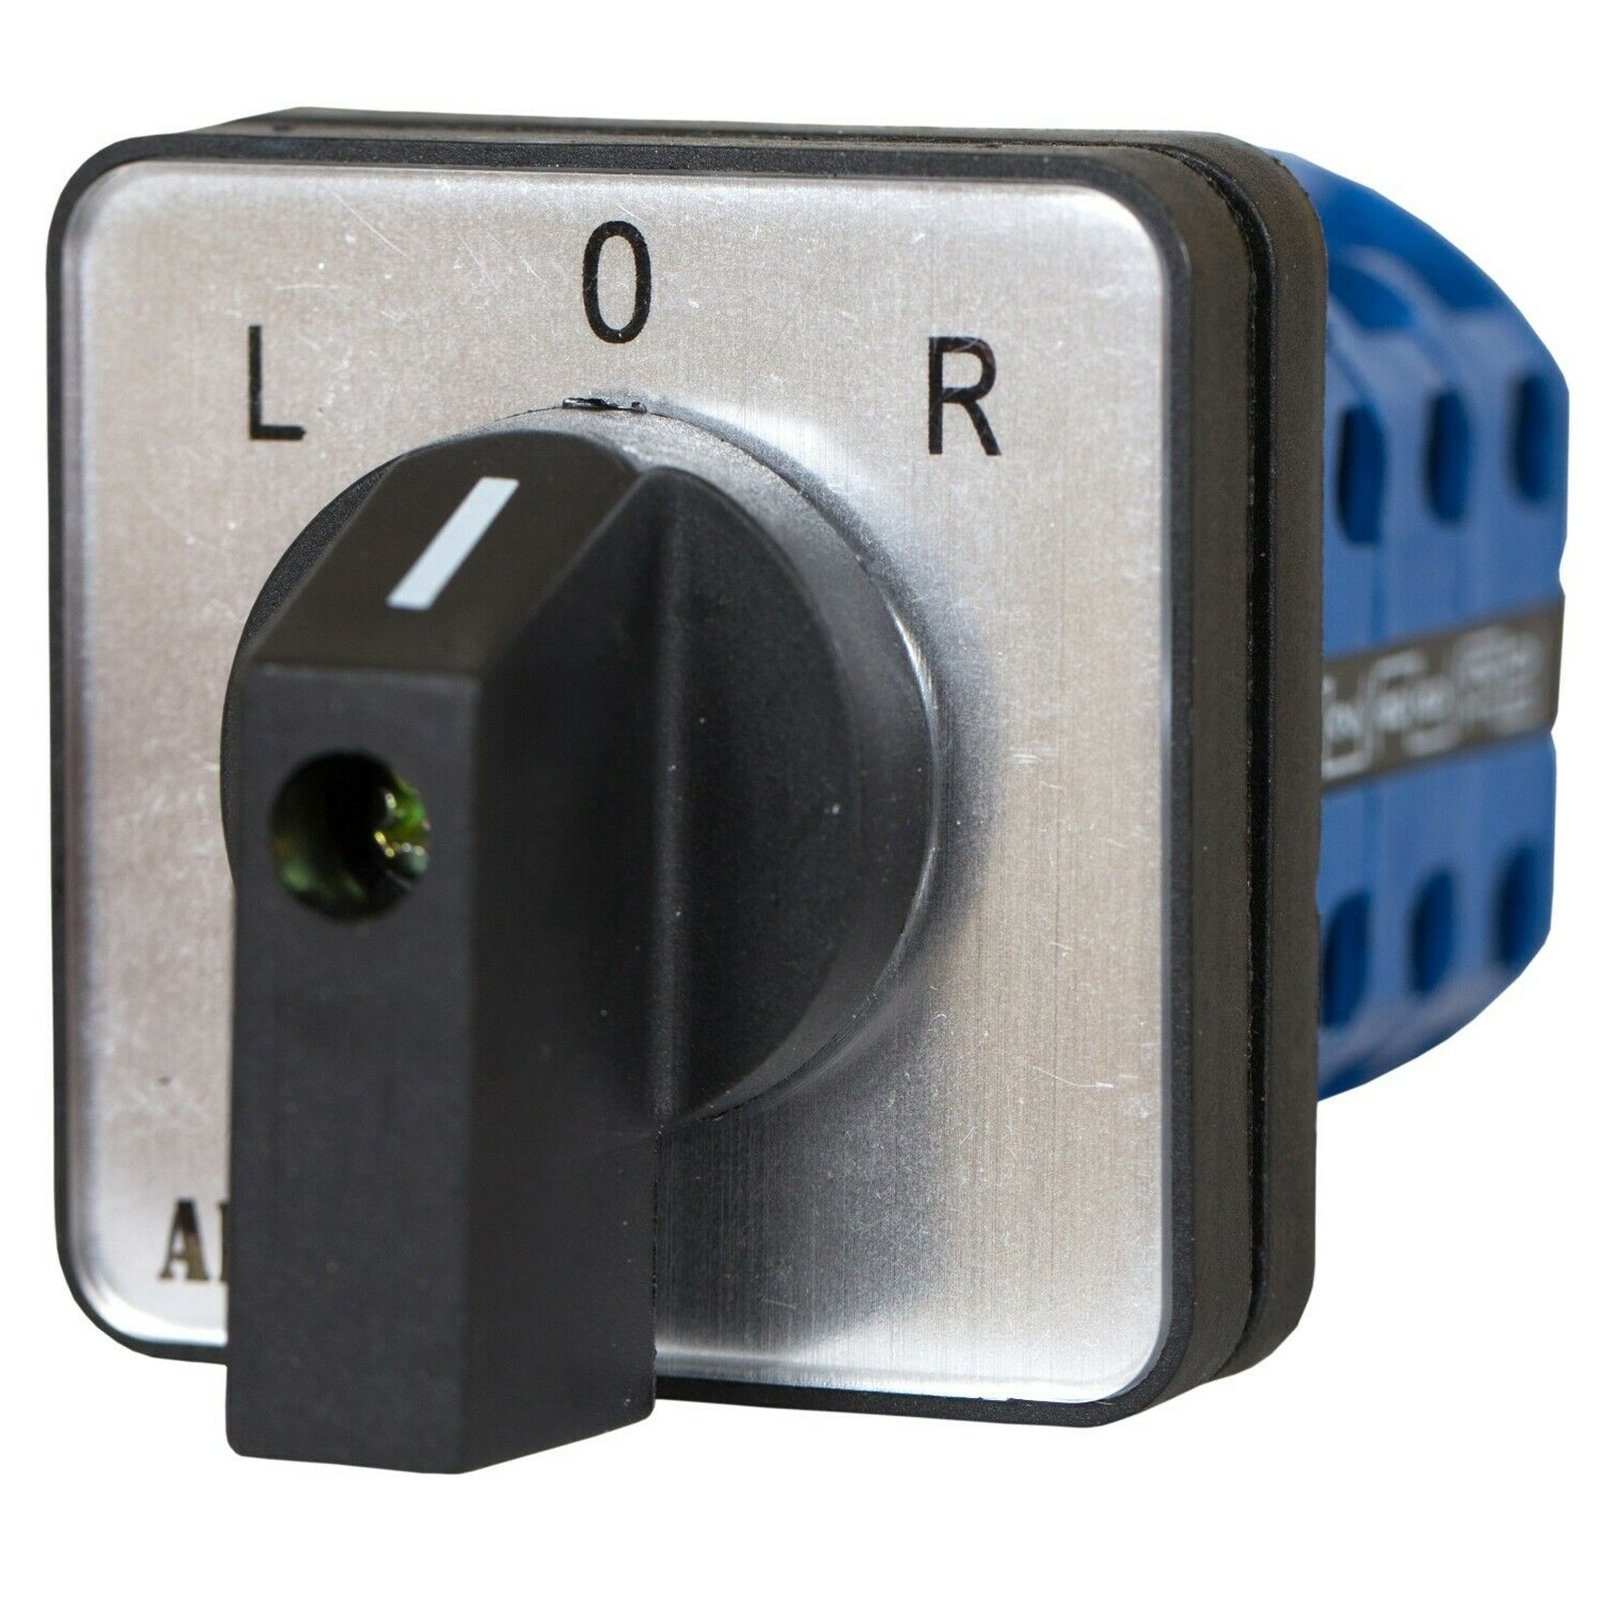 ADELID Schalter, Universal-Nockenschalter L-0-R Drehschalter Wechselschalter 16A 230/400V 3 Phasen 3 Positionen